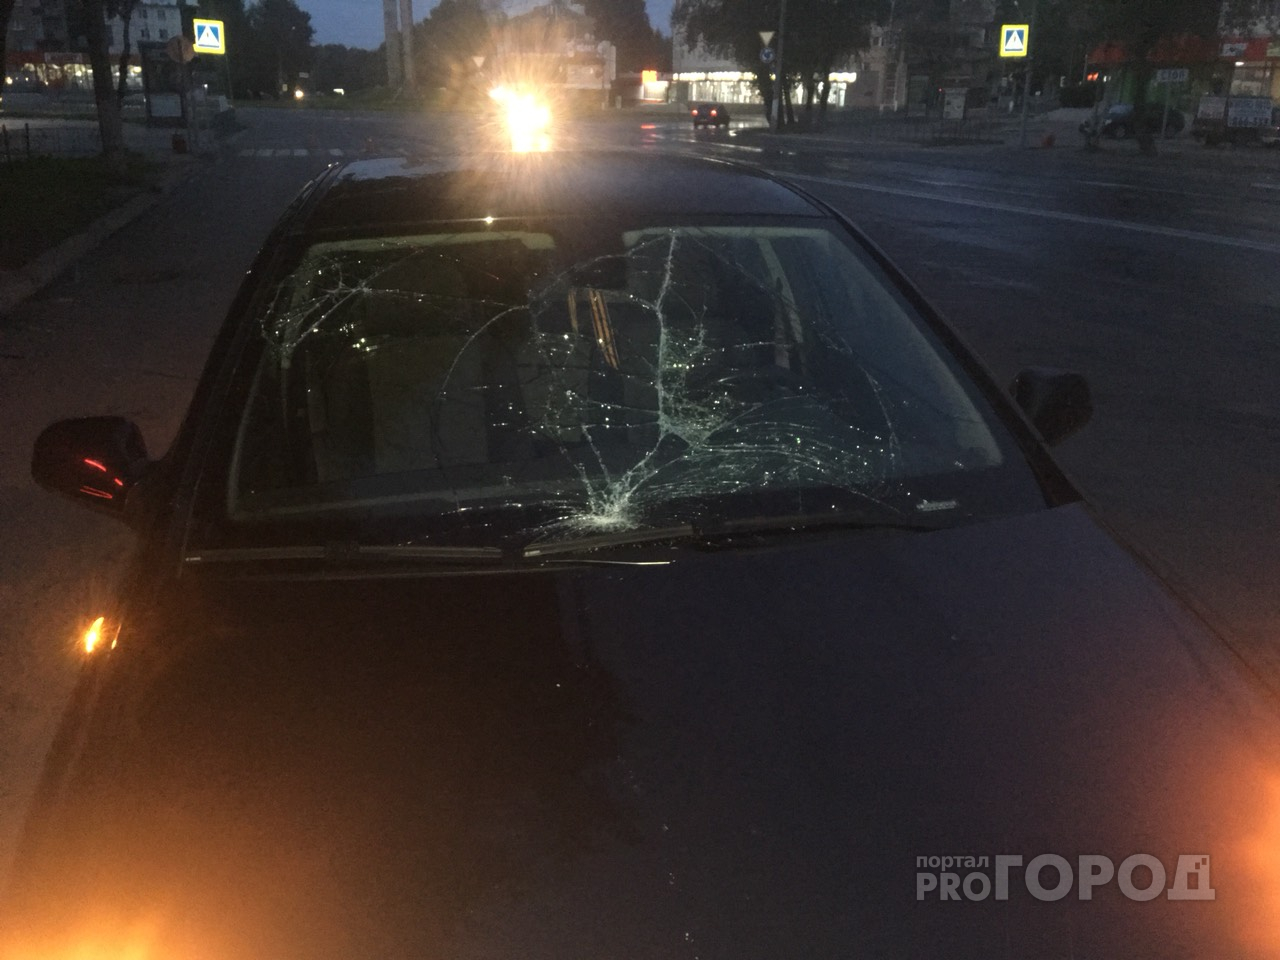 Появились фото с места ДТП в Сыктывкаре, где «стритрейсер» сбил пешехода